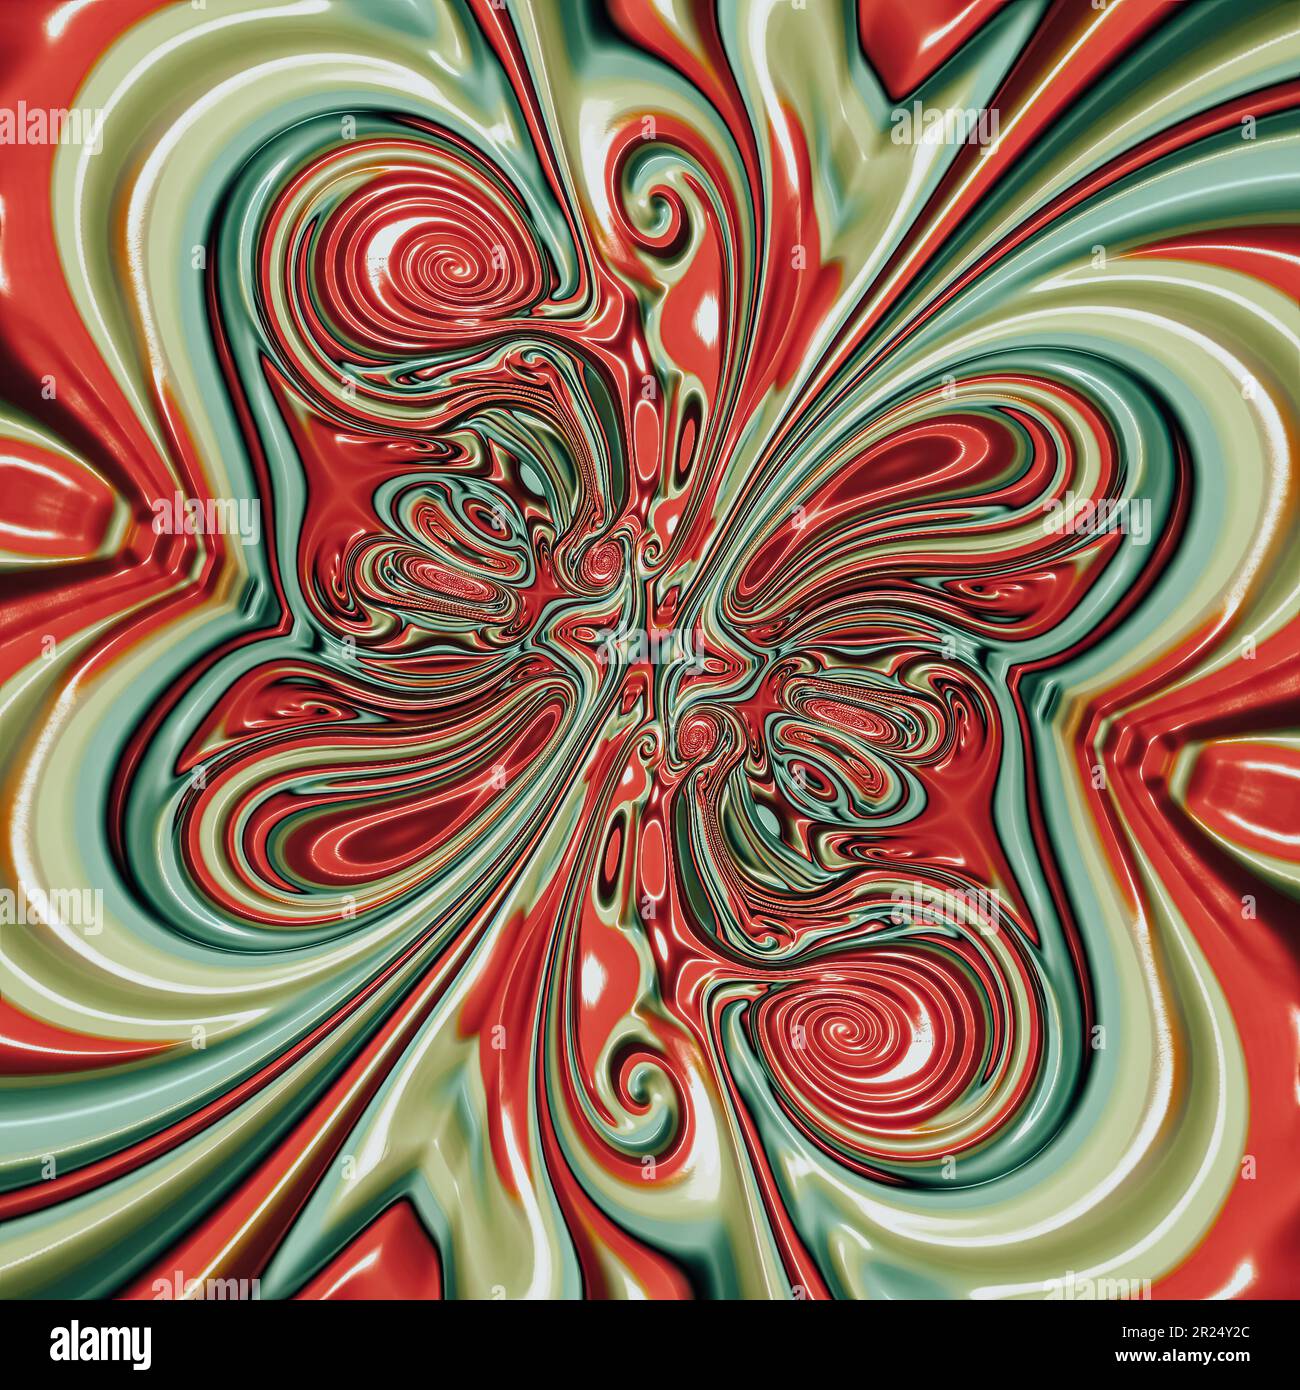 Serie de patrones de caleidoscopio abstracto, conjunto de 9. Líneas de líquido en rojo y verde. Foto de stock